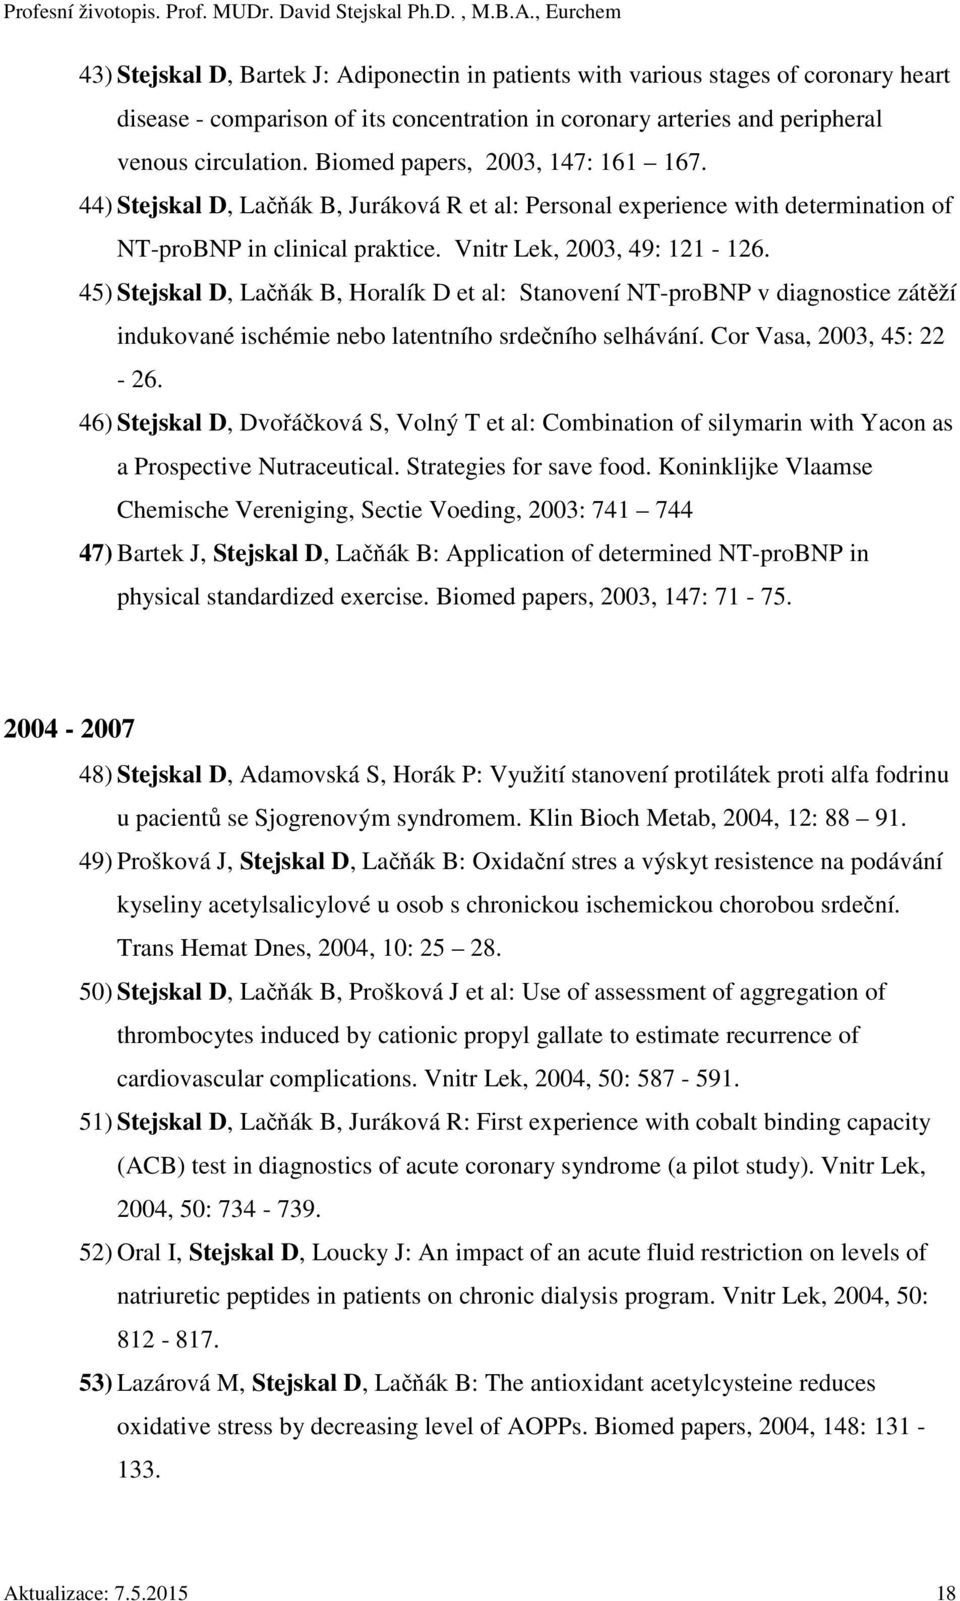 45) Stejskal D, Lačňák B, Horalík D et al: Stanovení NT-proBNP v diagnostice zátěží indukované ischémie nebo latentního srdečního selhávání. Cor Vasa, 2003, 45: 22-26.